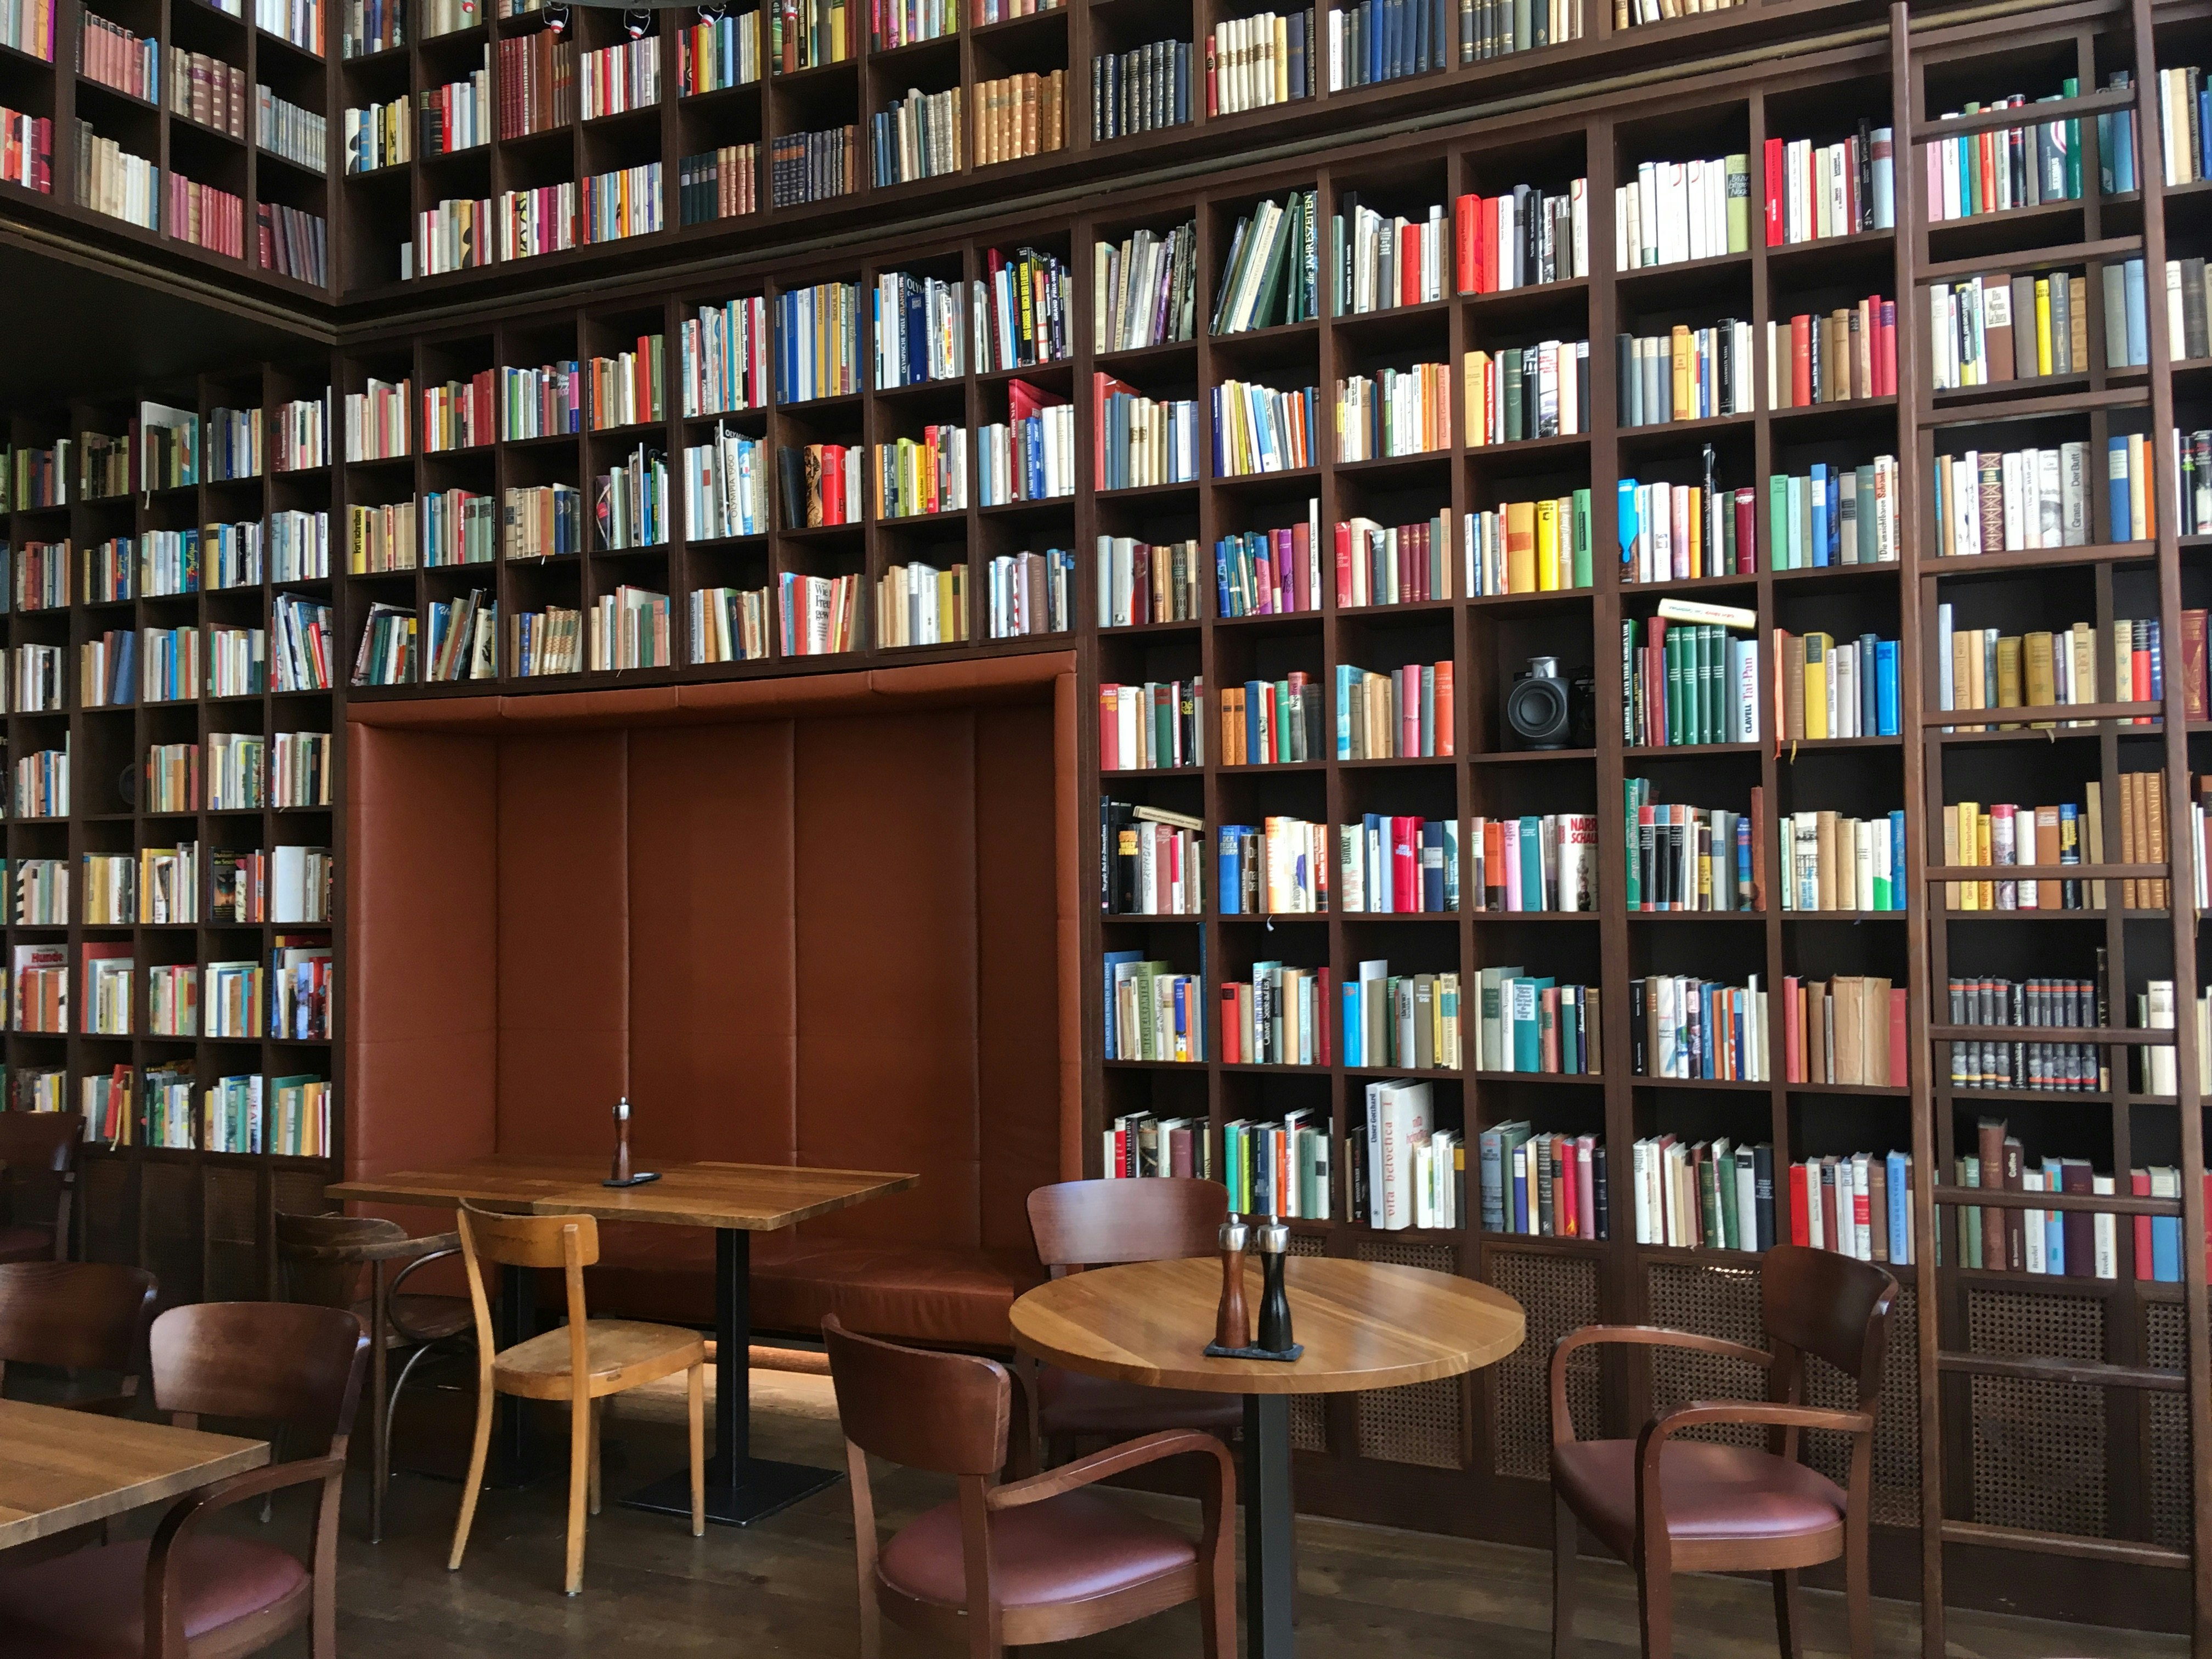 Interiören i B2:s vinbibliotek: de höga väggarna är täckta med rader och rader av bokhyllor i mörkt trä, med en sittalkov inbyggd i dem på marknivå;  Det finns ytterligare träbord och stolar i mitten av rummet.